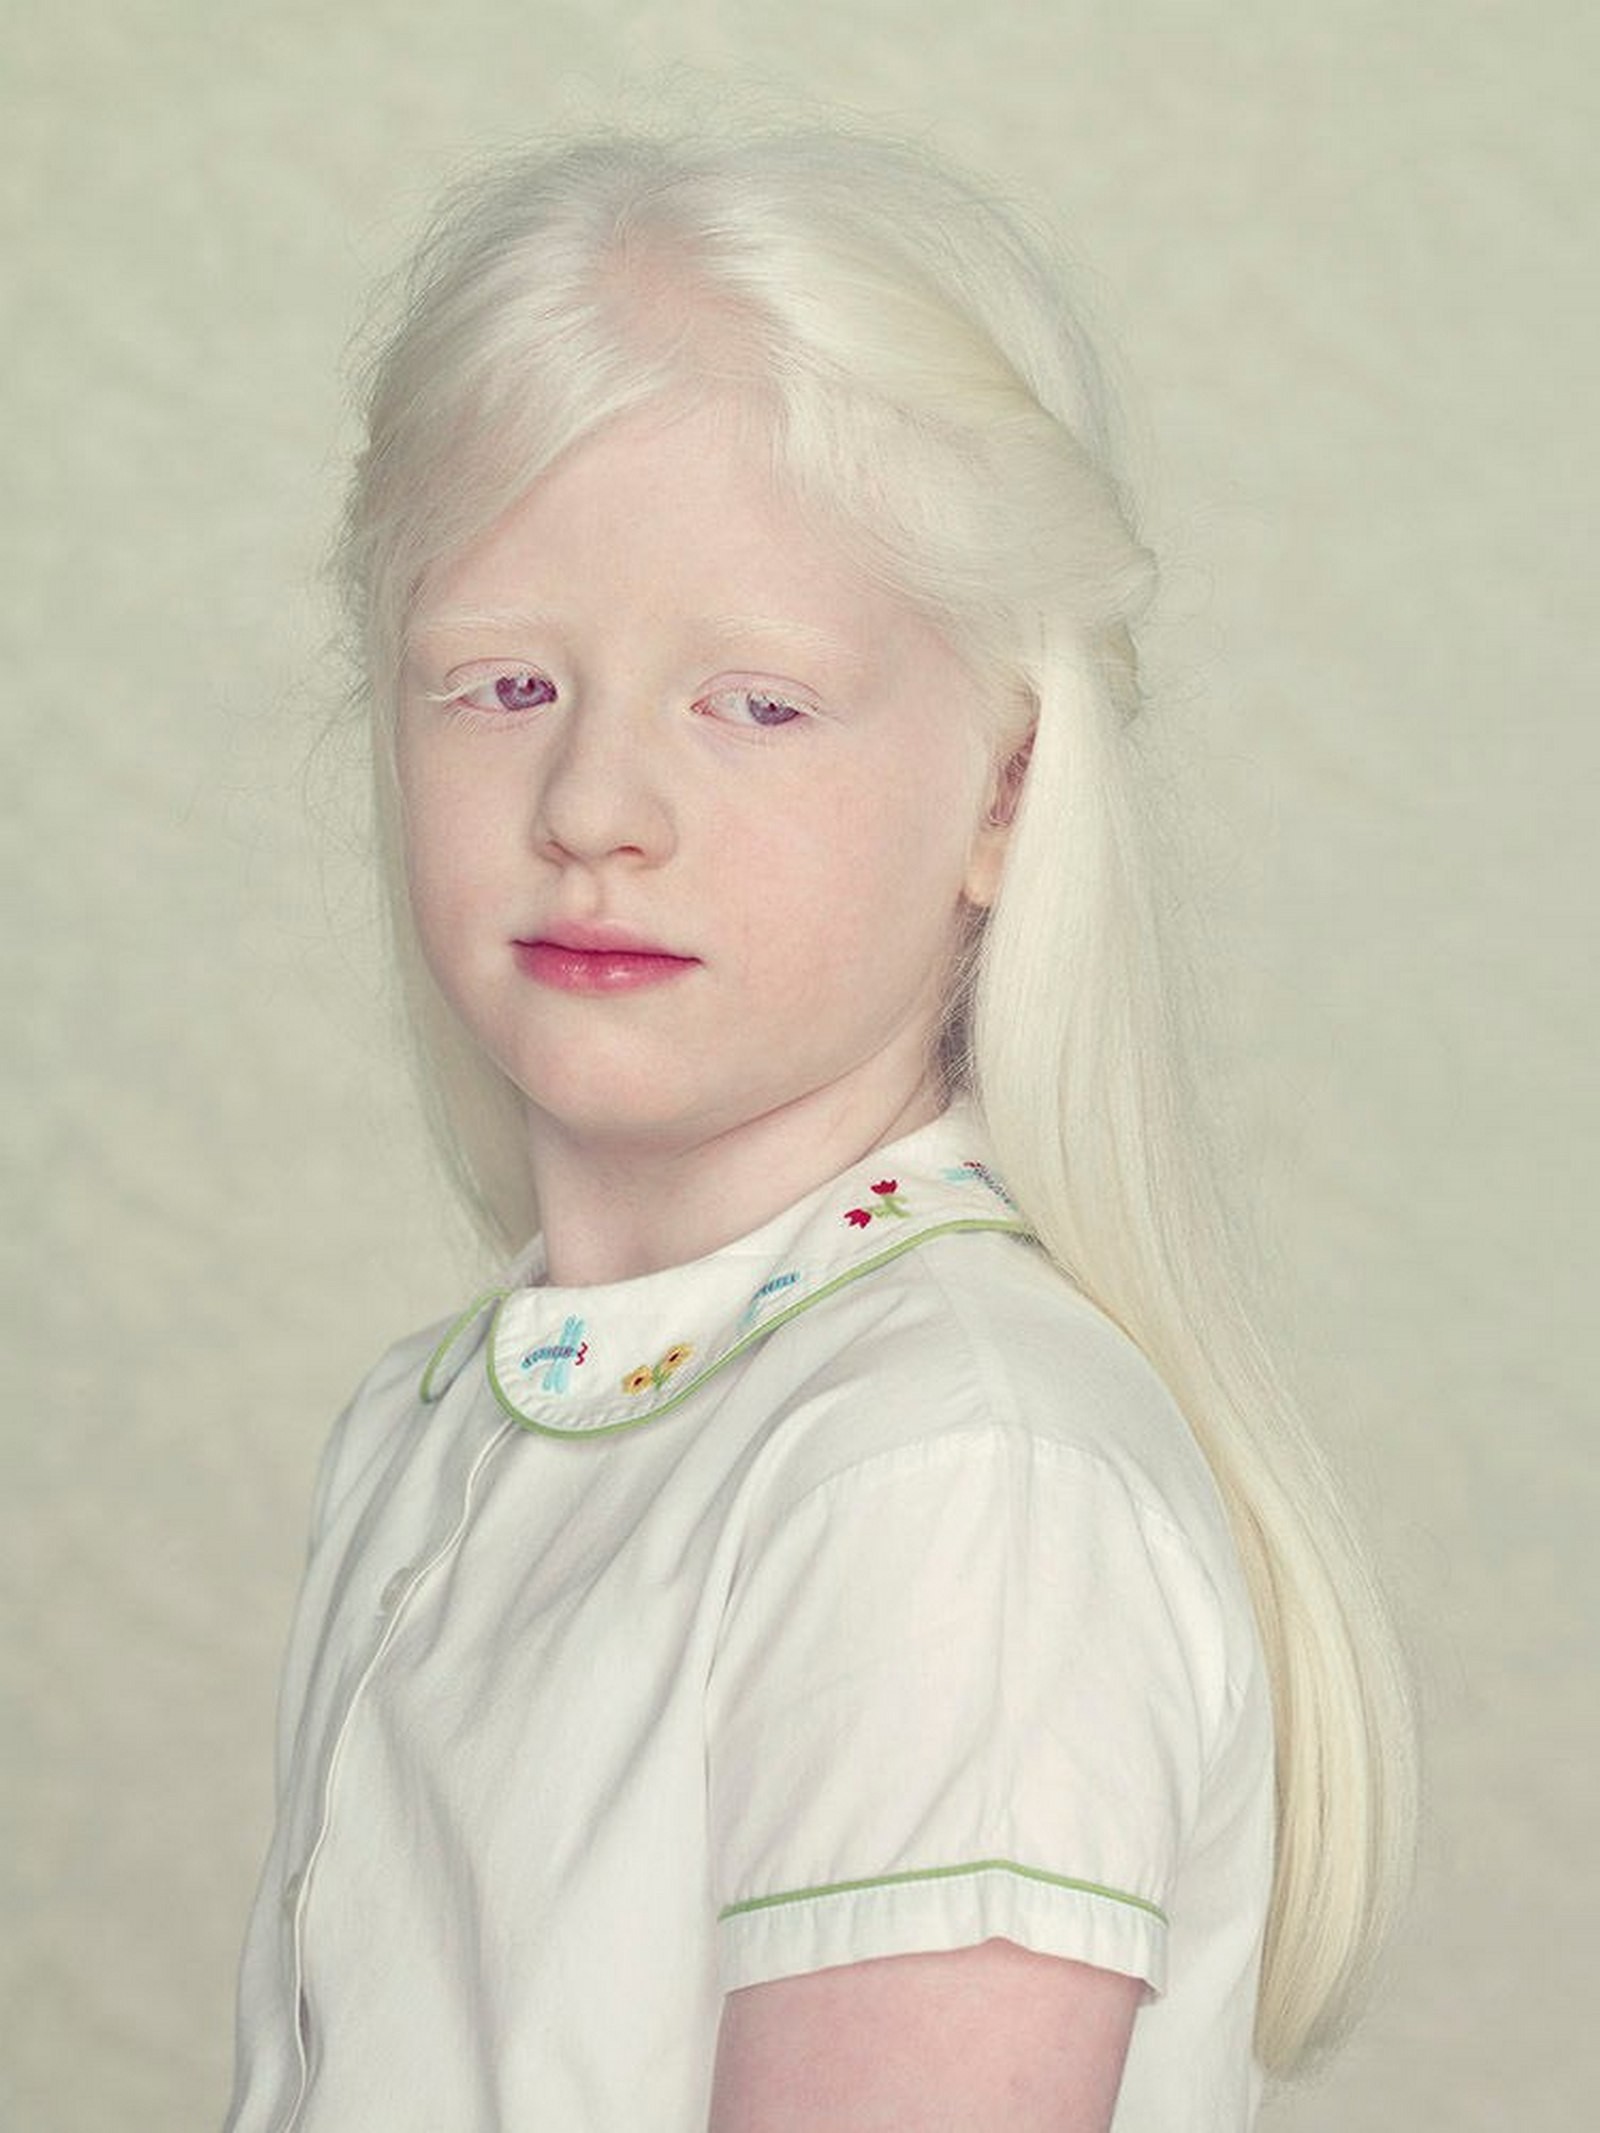 Люди альбиносы как выглядят фото